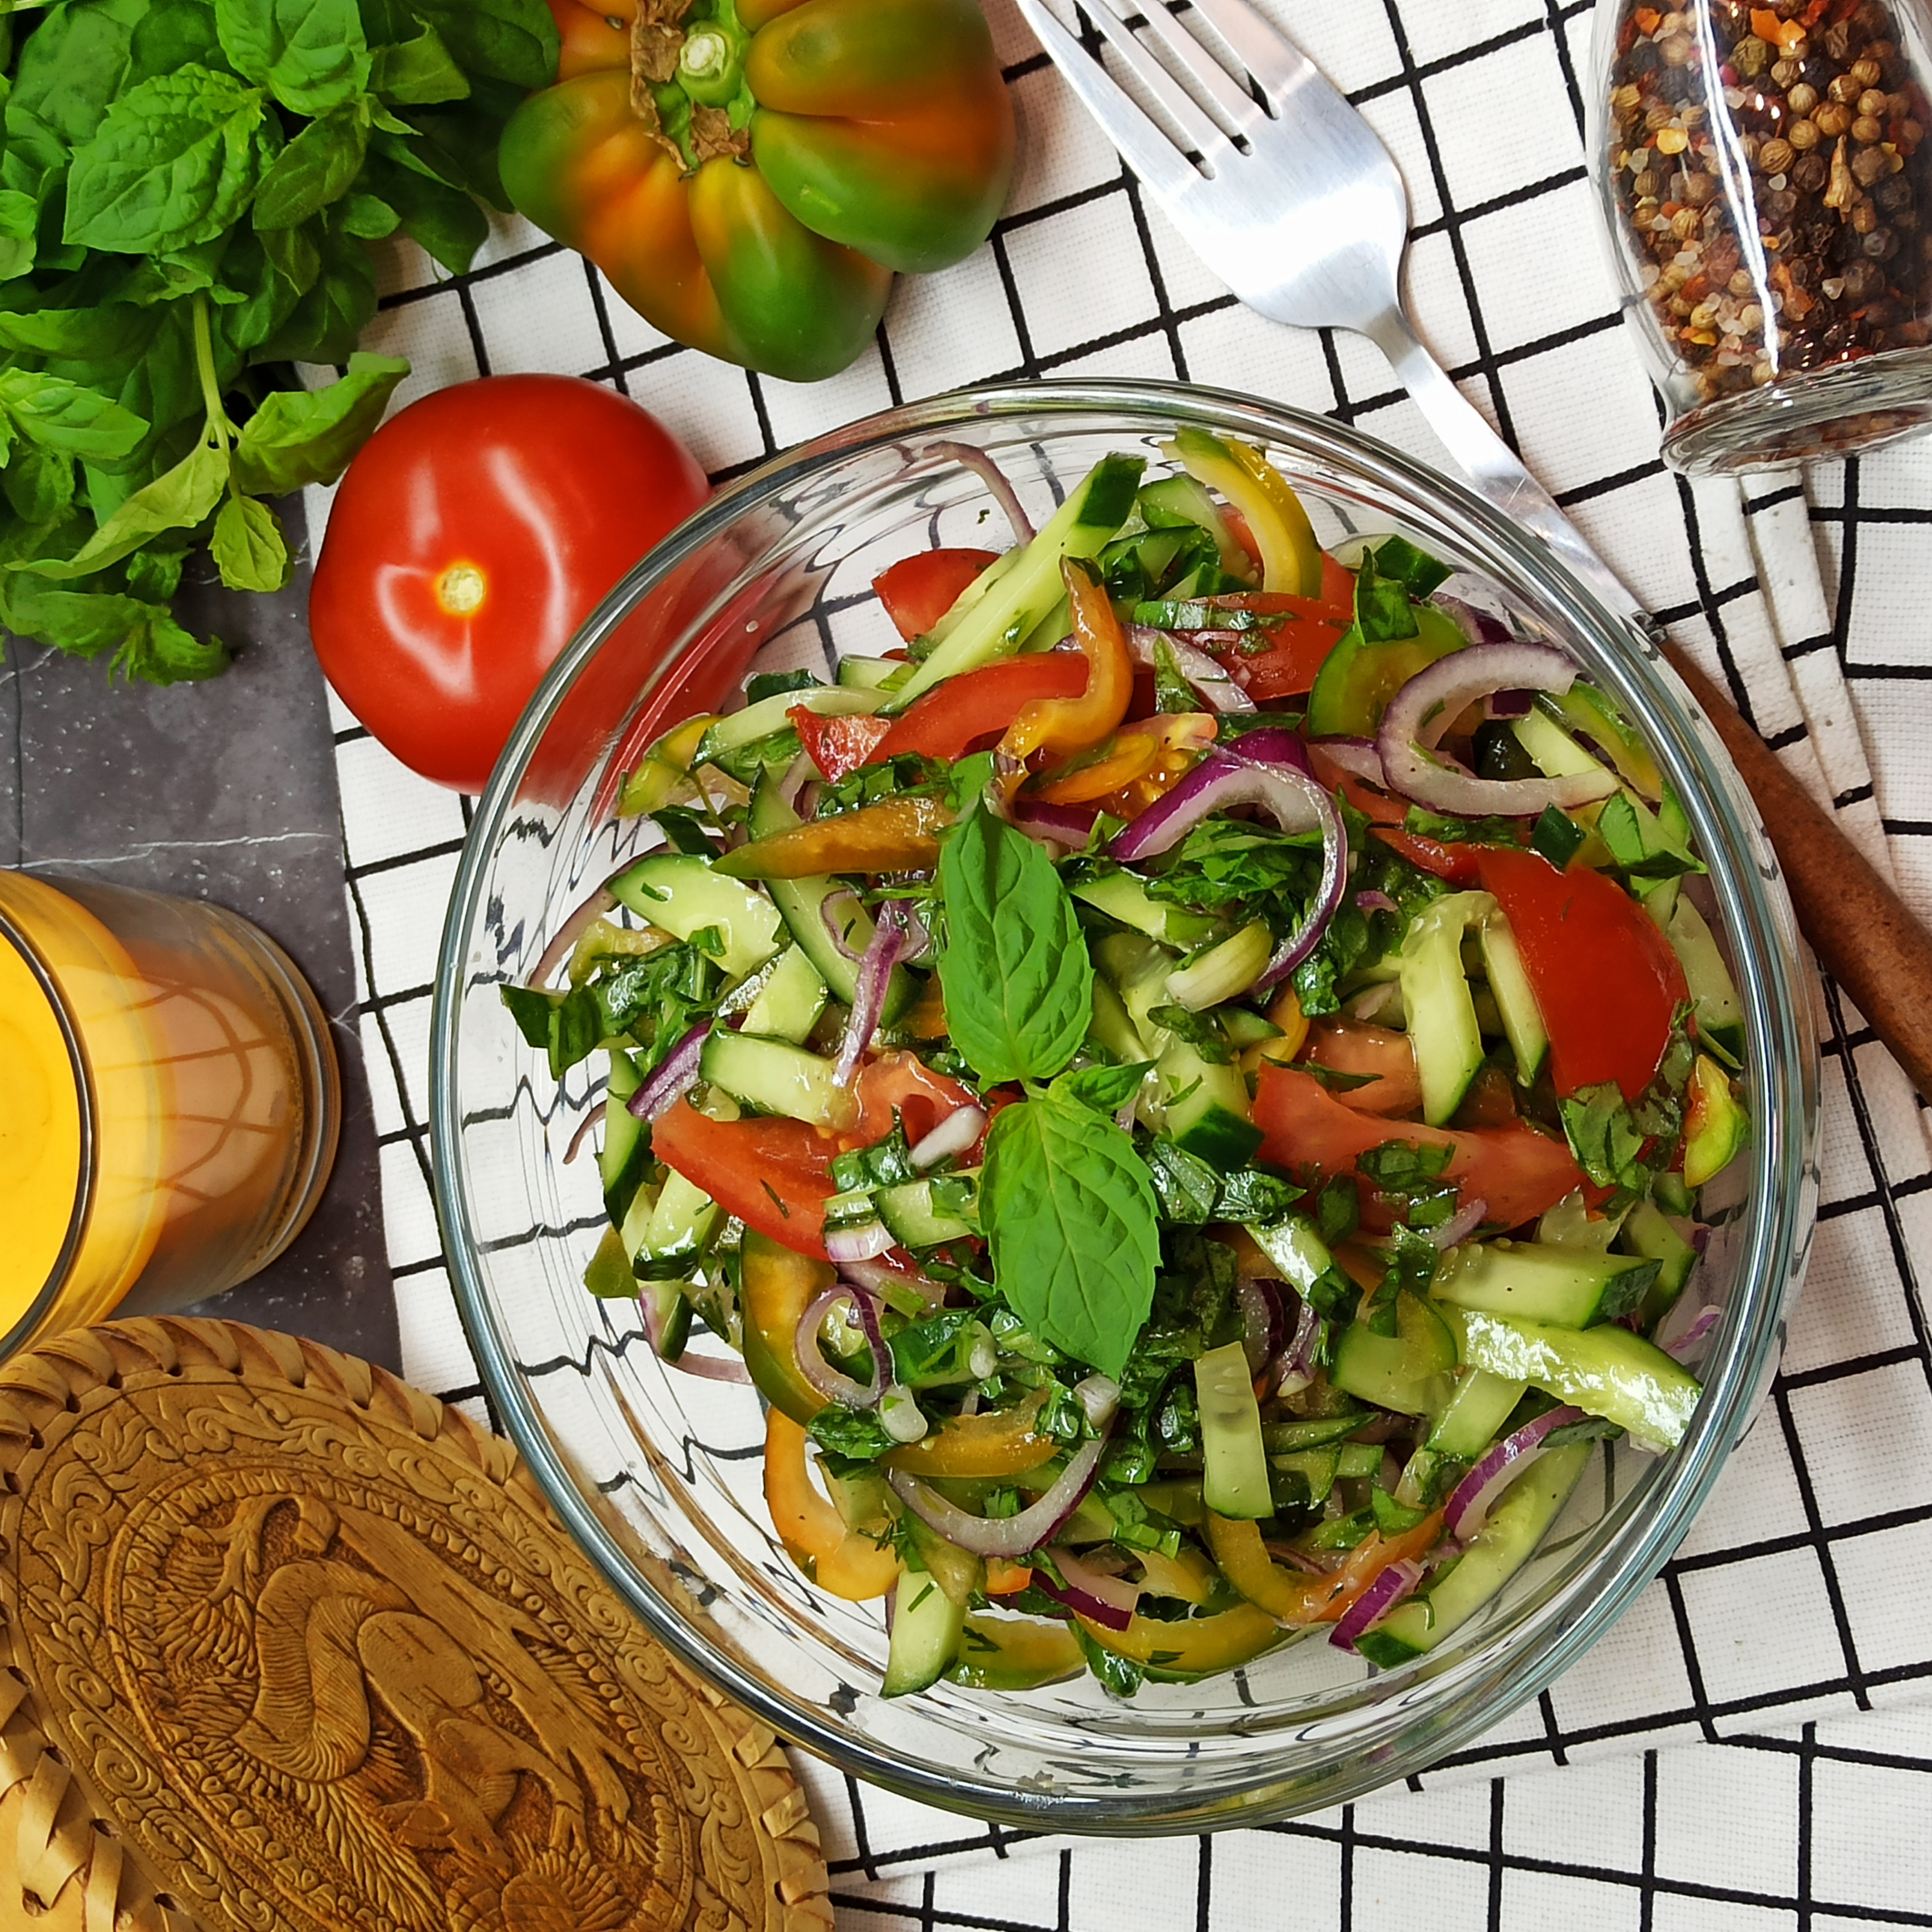 Салат из щавеля и свежих овощей